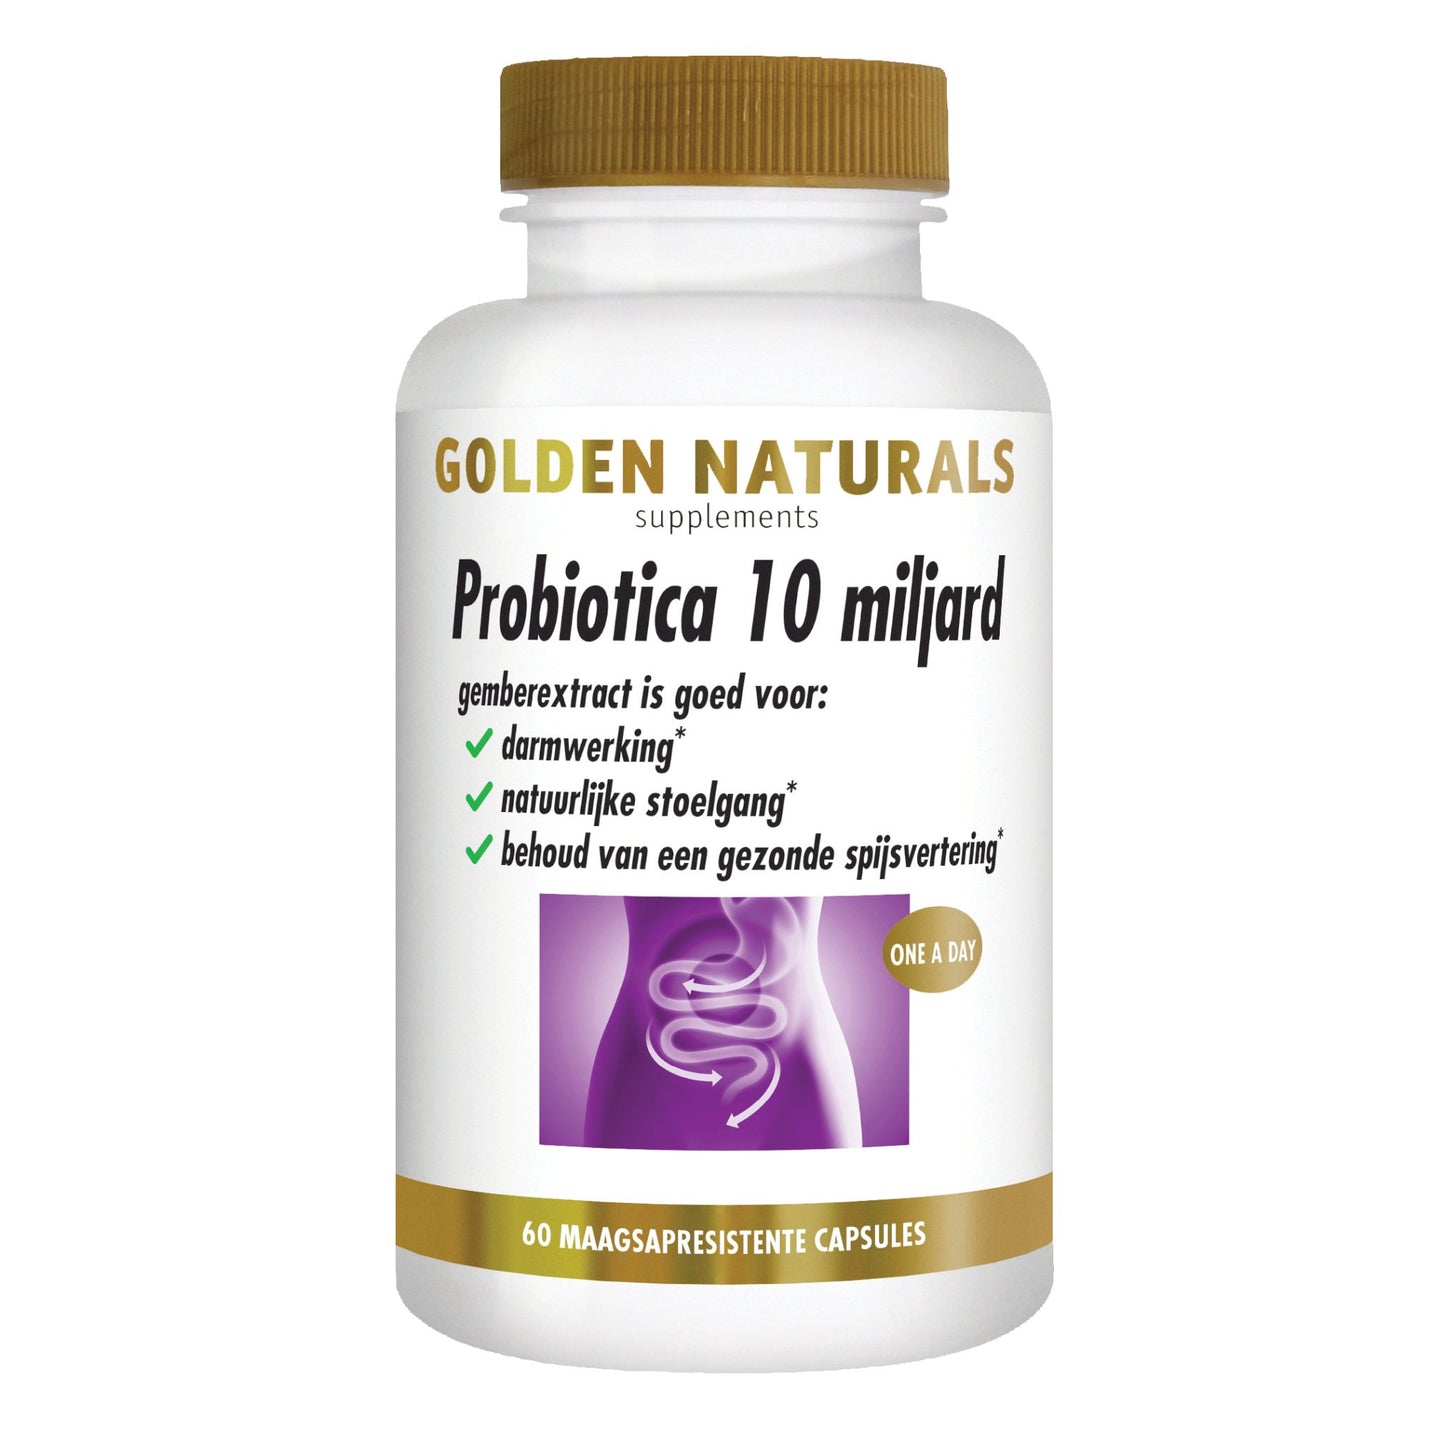 Probiotica 10 miljard - 60 - veganistische maagsapresistente capsules Supplement Golden Naturals   